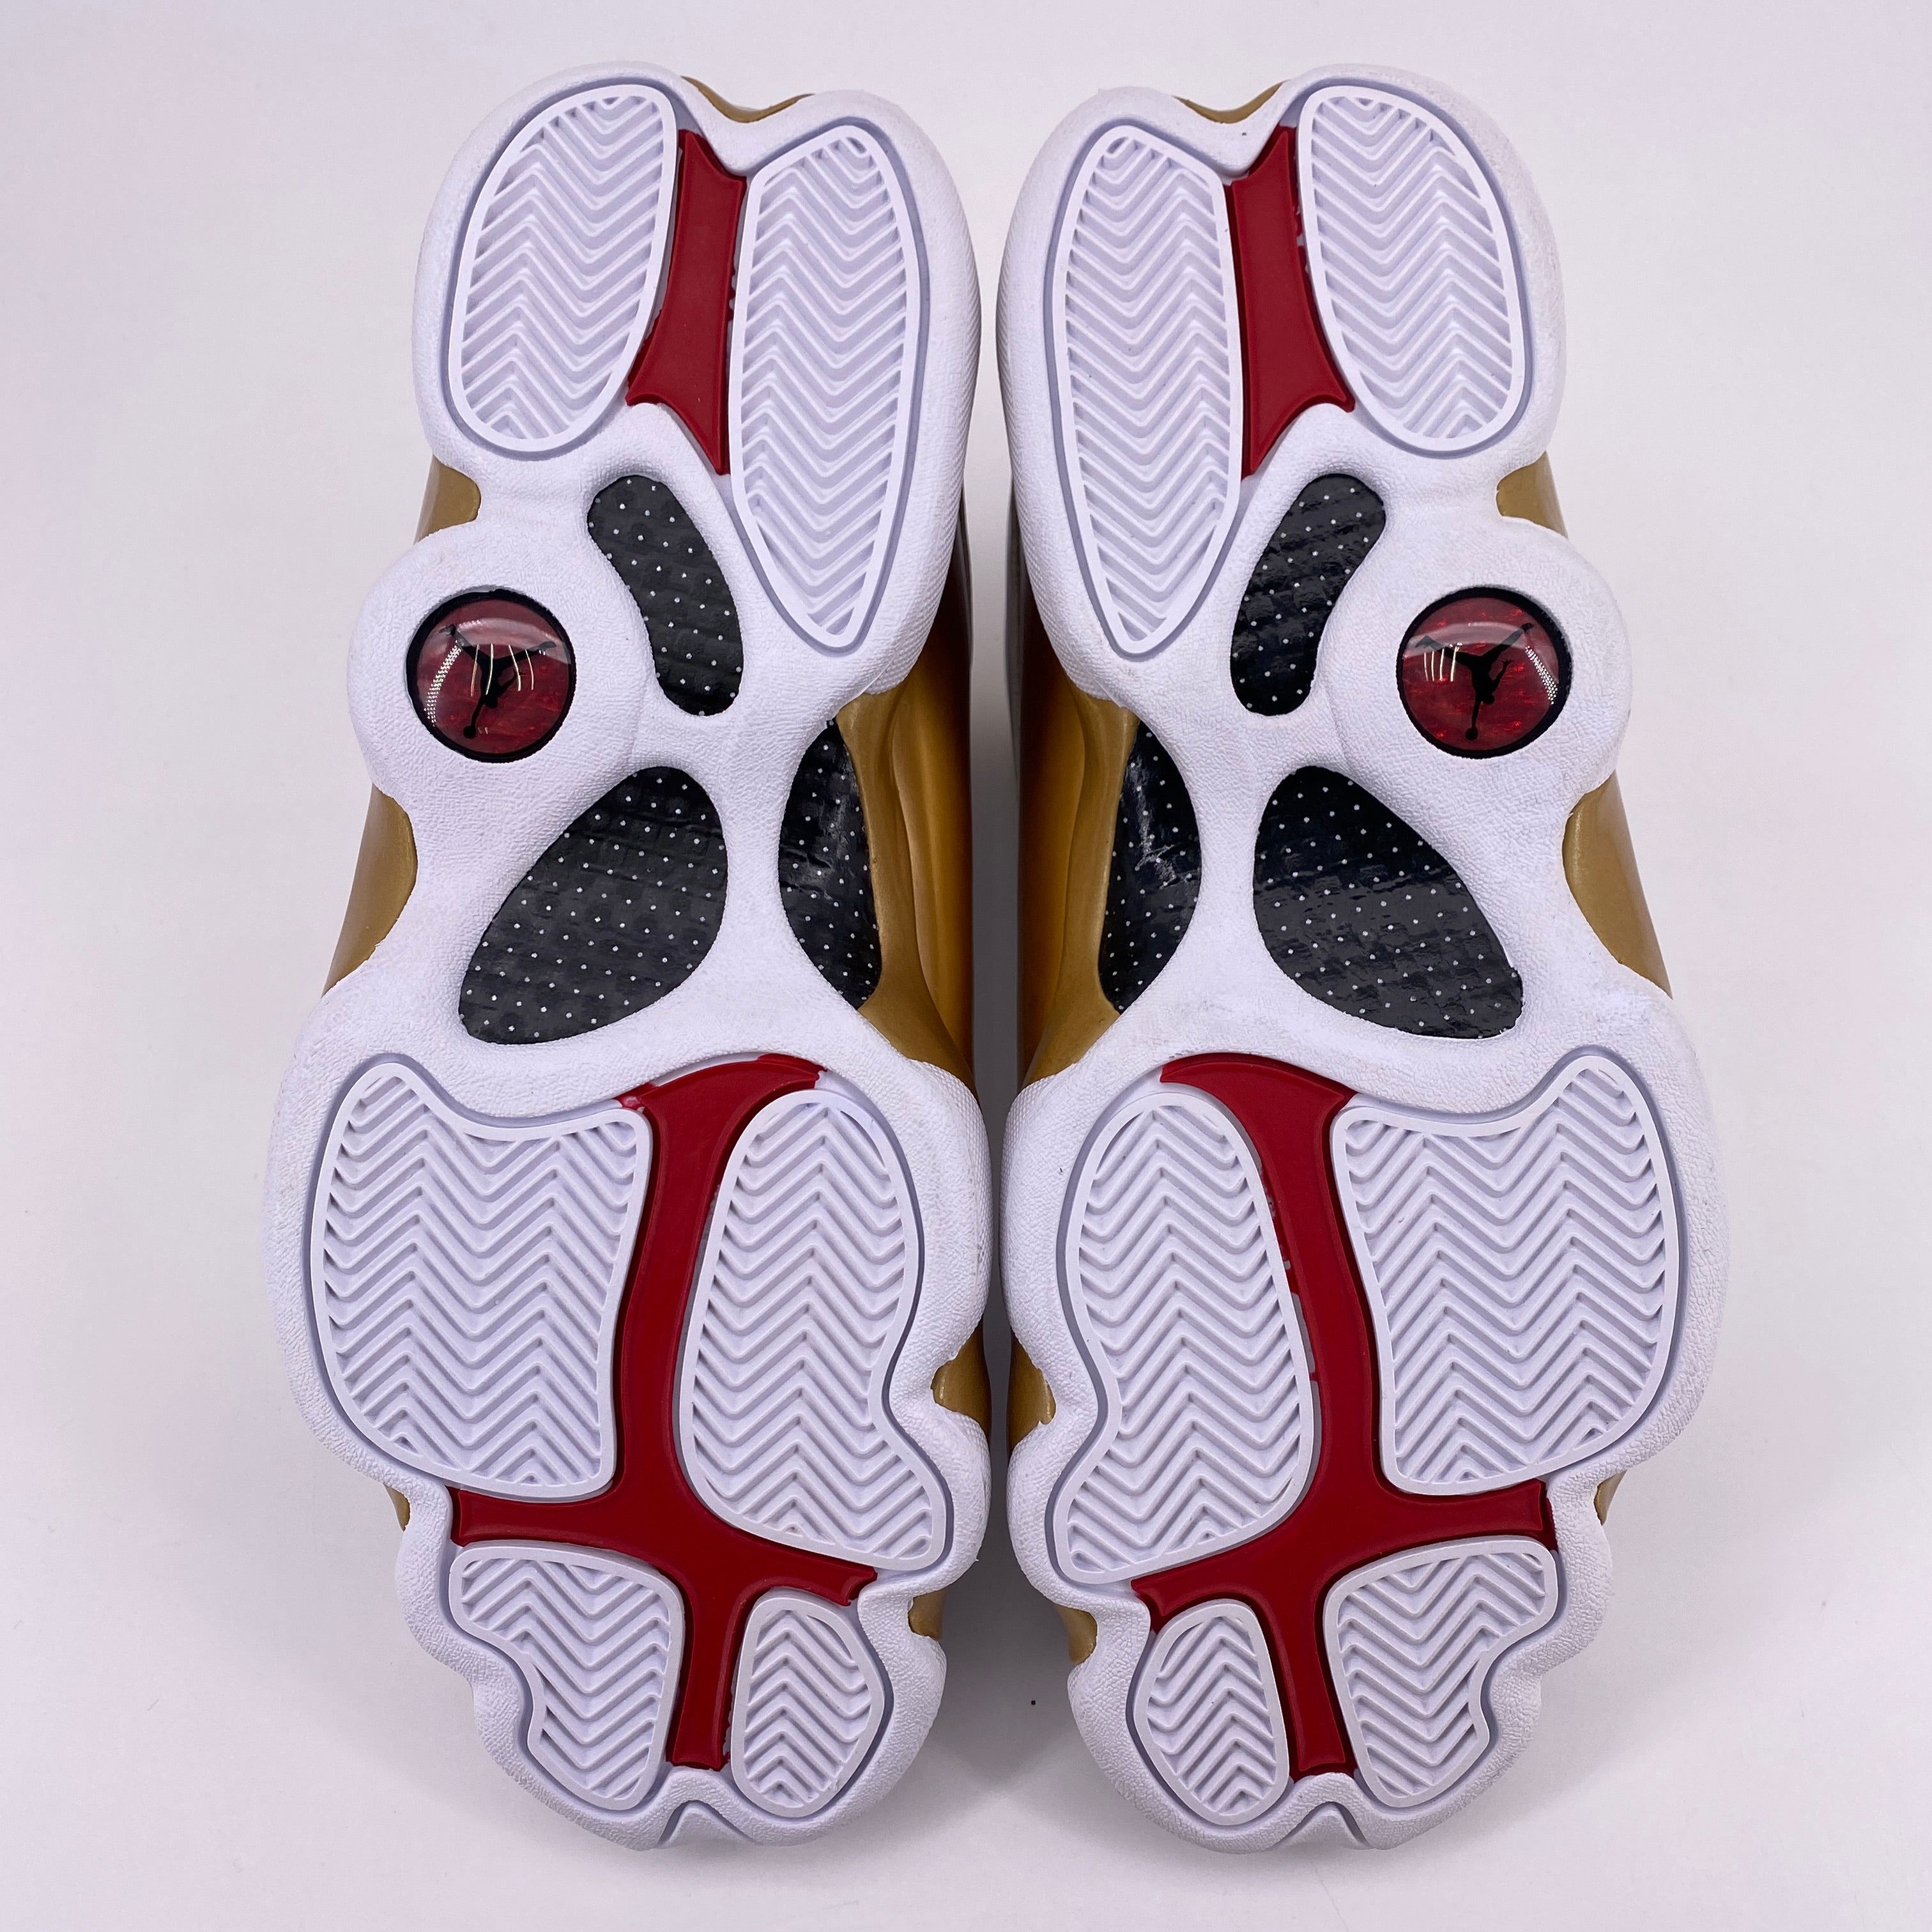 Air Jordan 13 Retro &quot;Dmp&quot; 2017 New Size 8.5